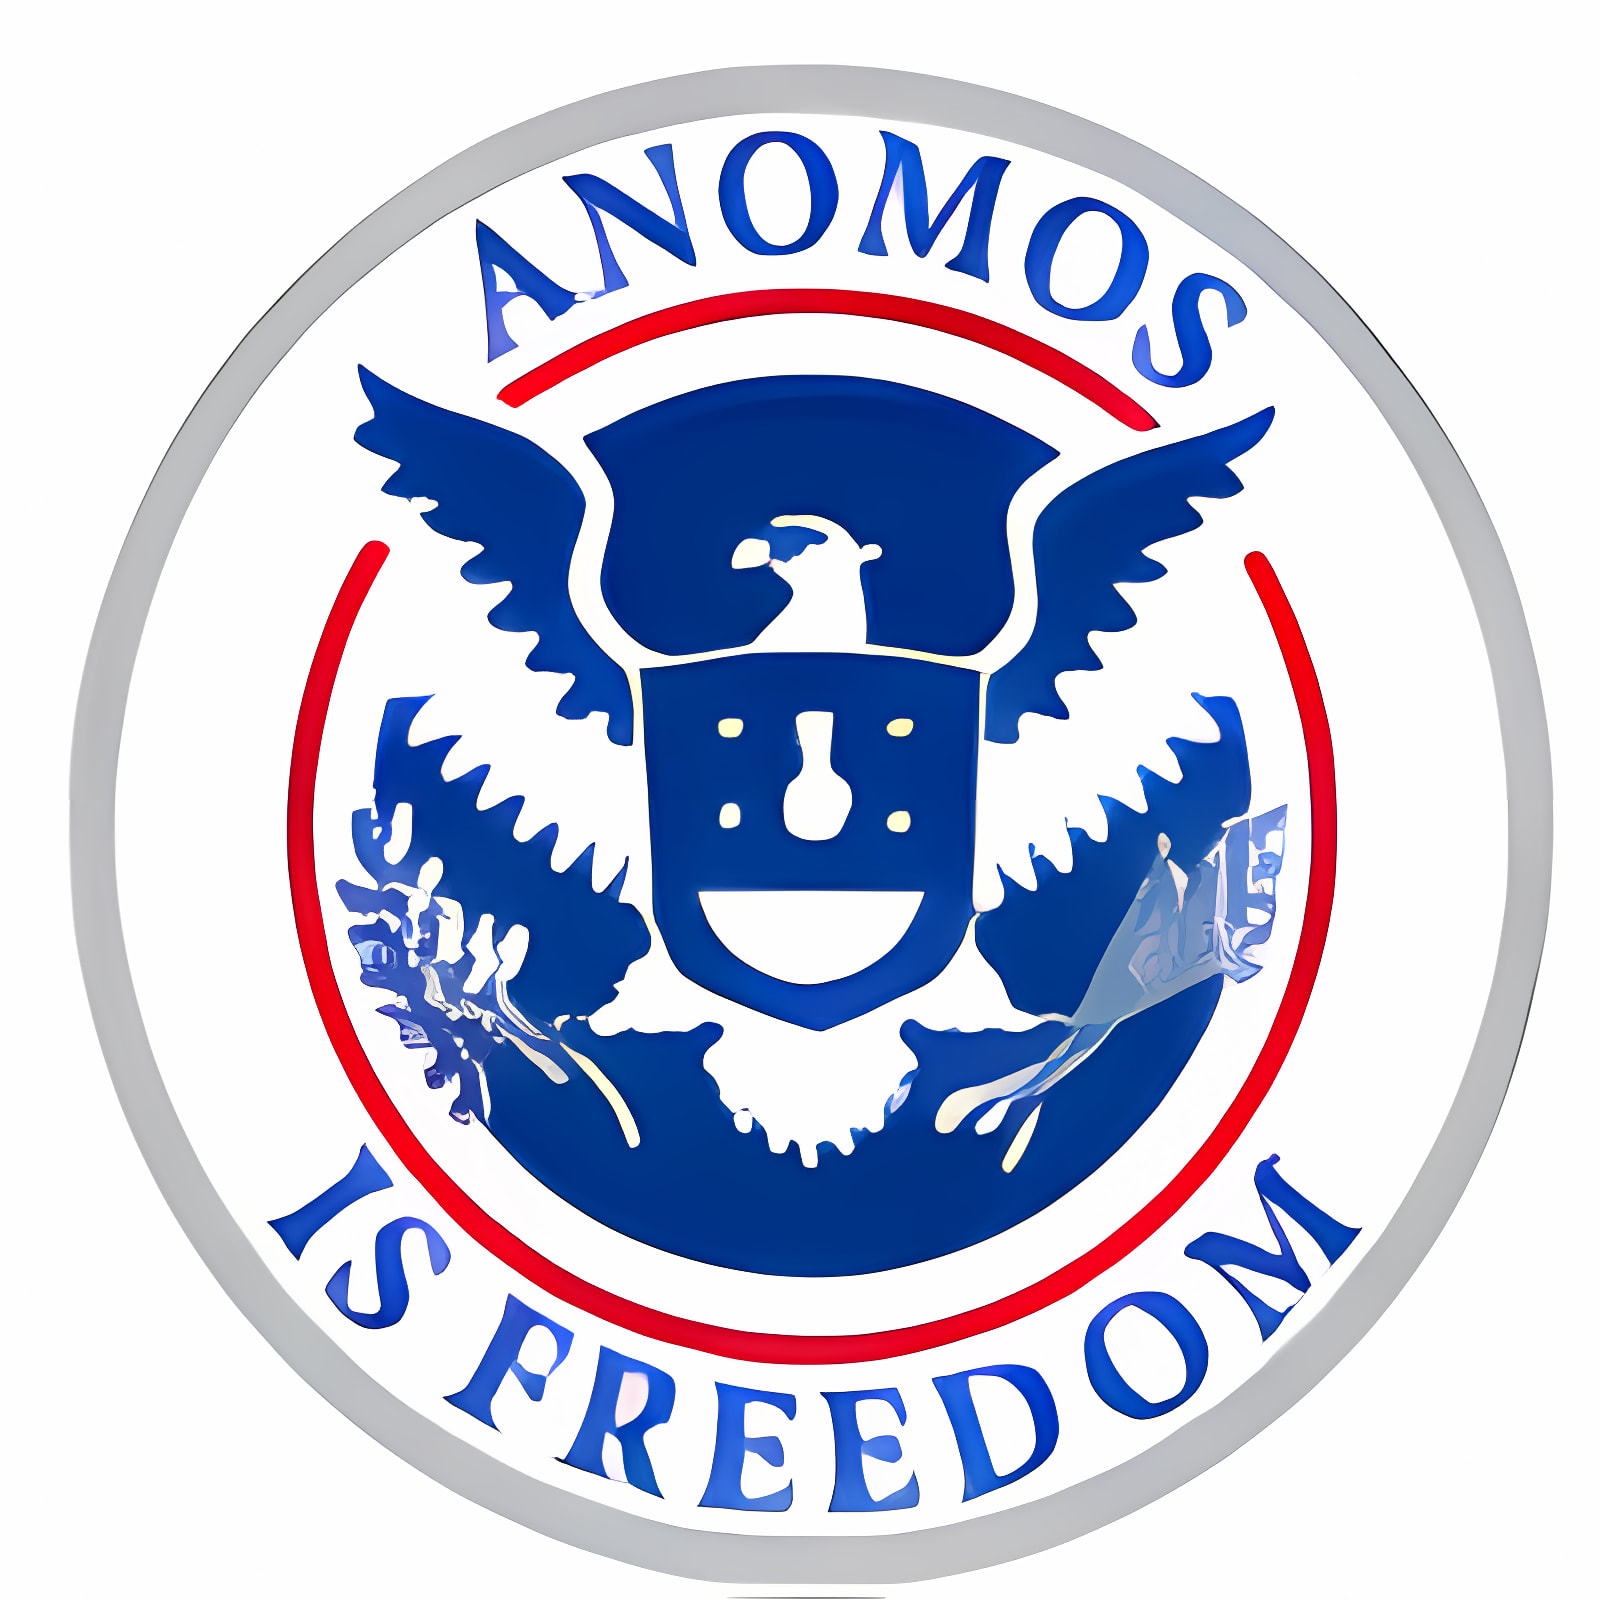 Herunterladen Anomos Installieren Sie Neueste App Downloader